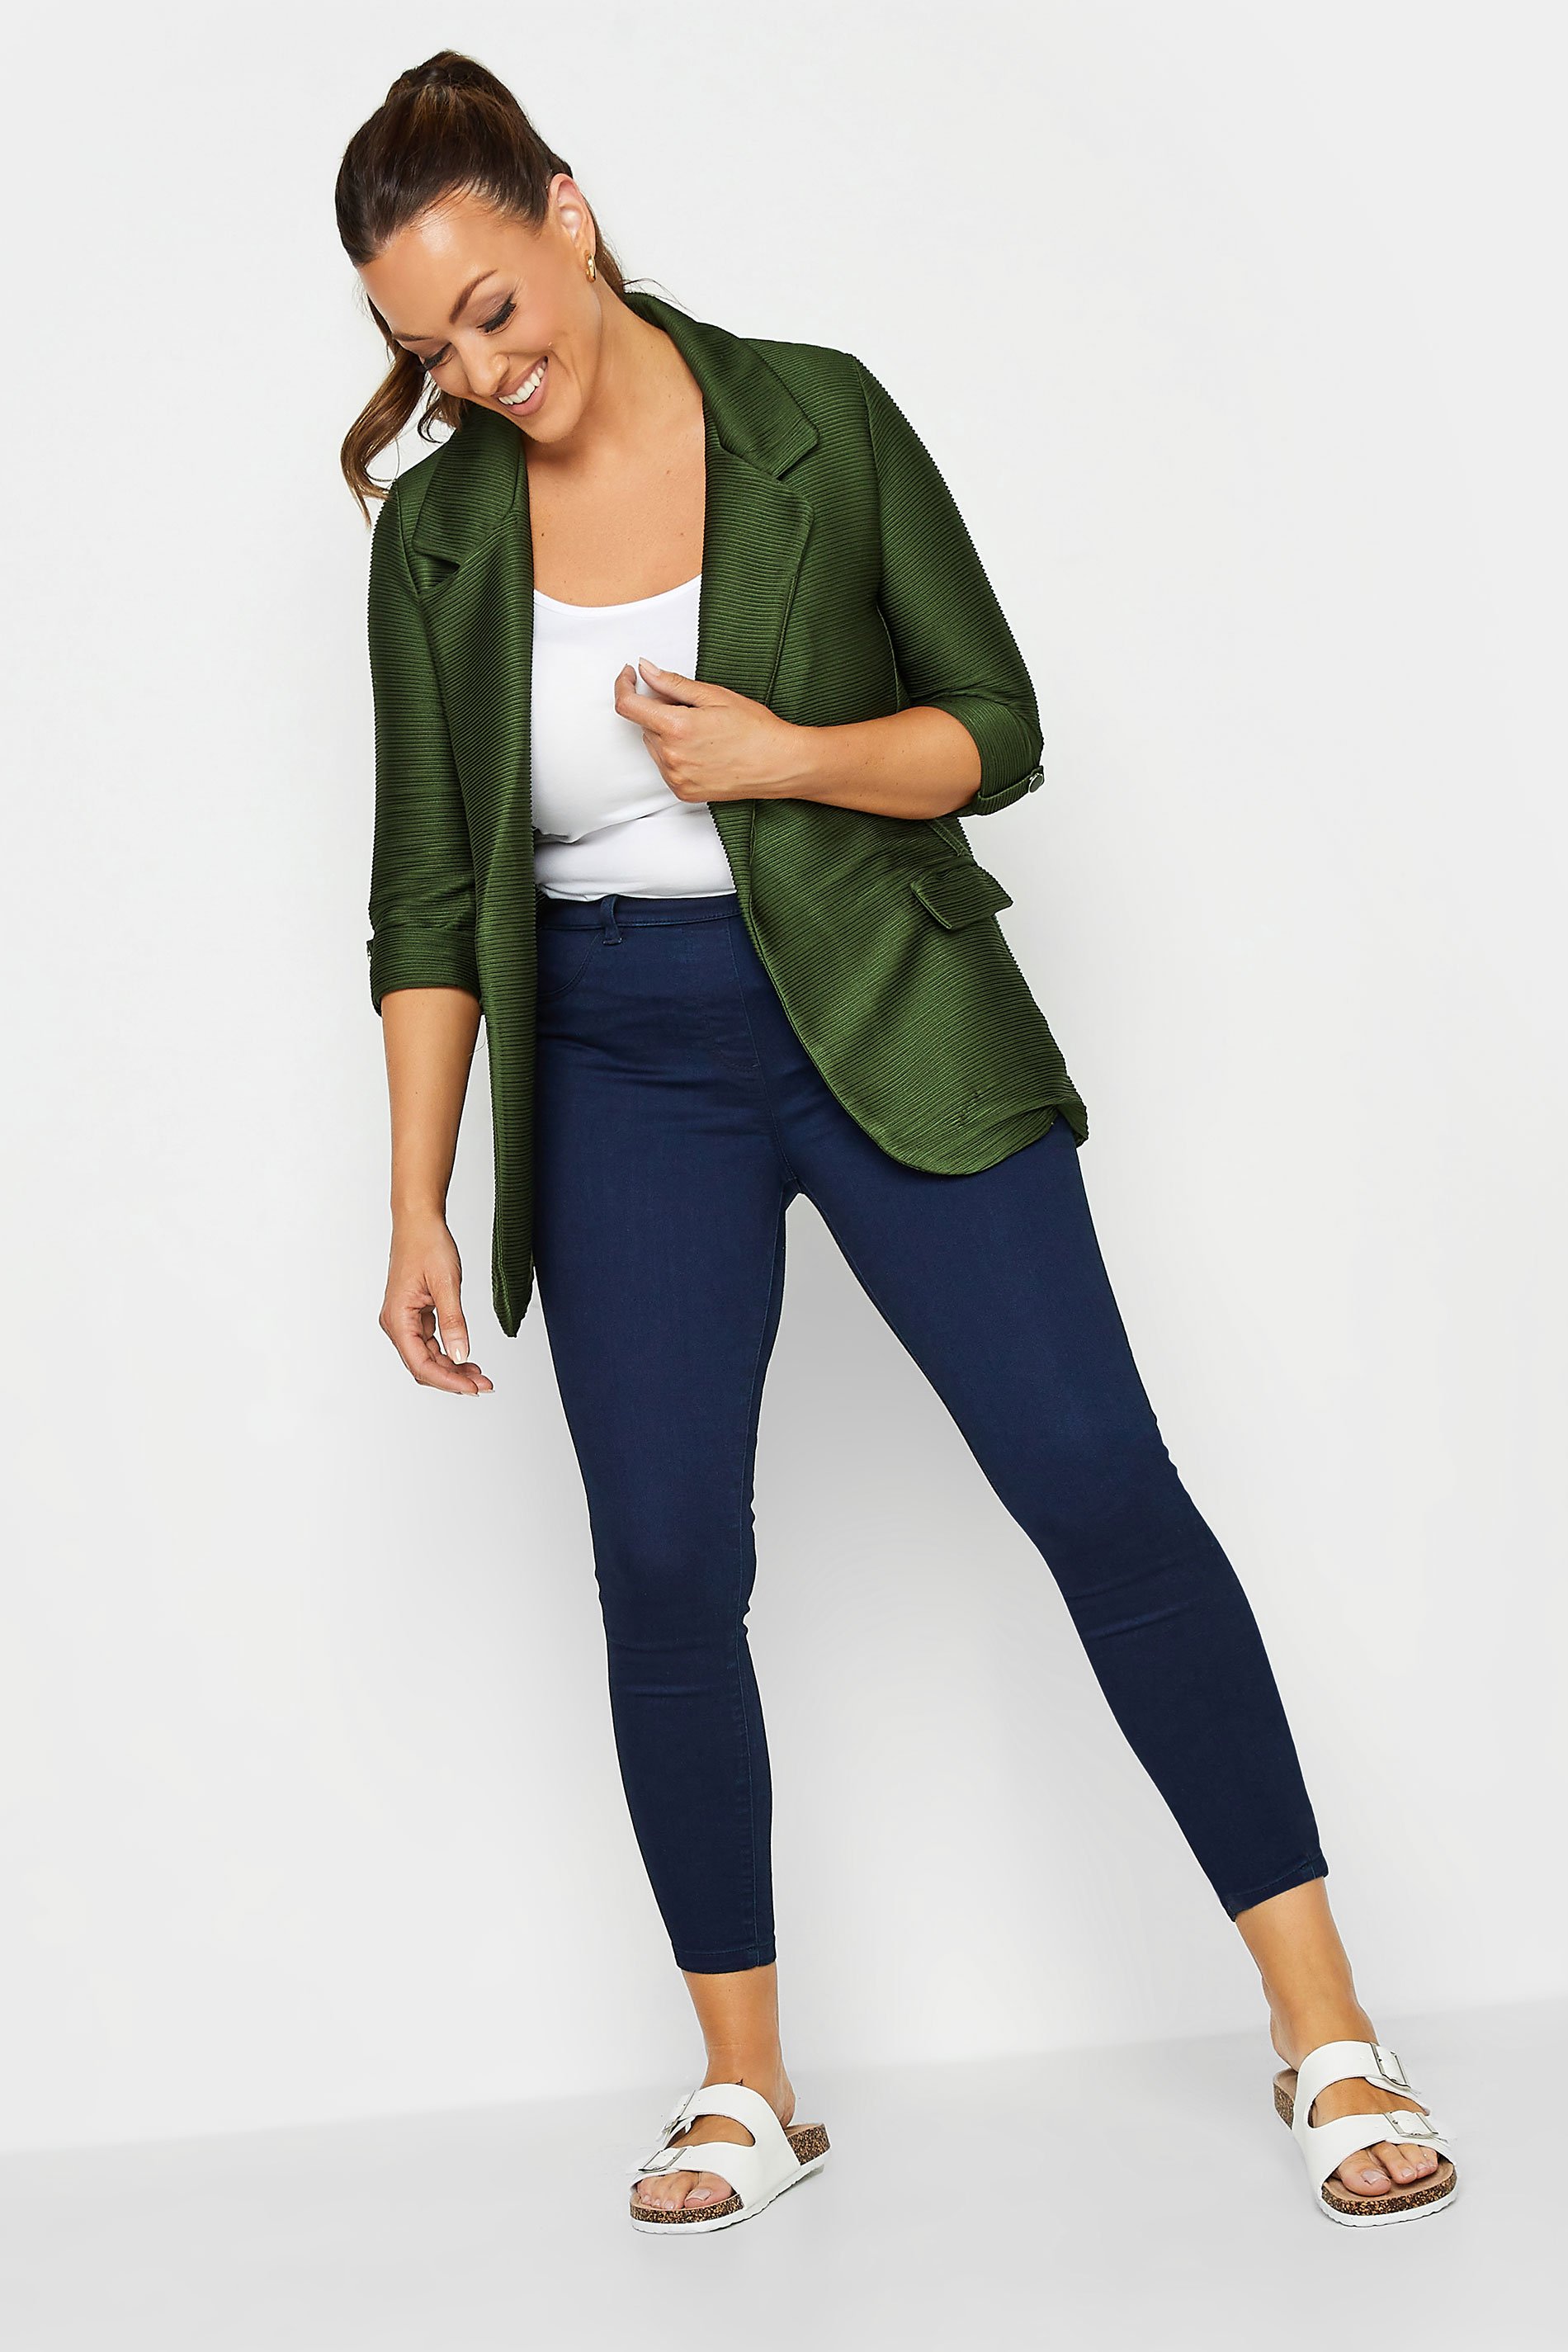 M&Co Khaki Green Textured Blazer | M&Co 2